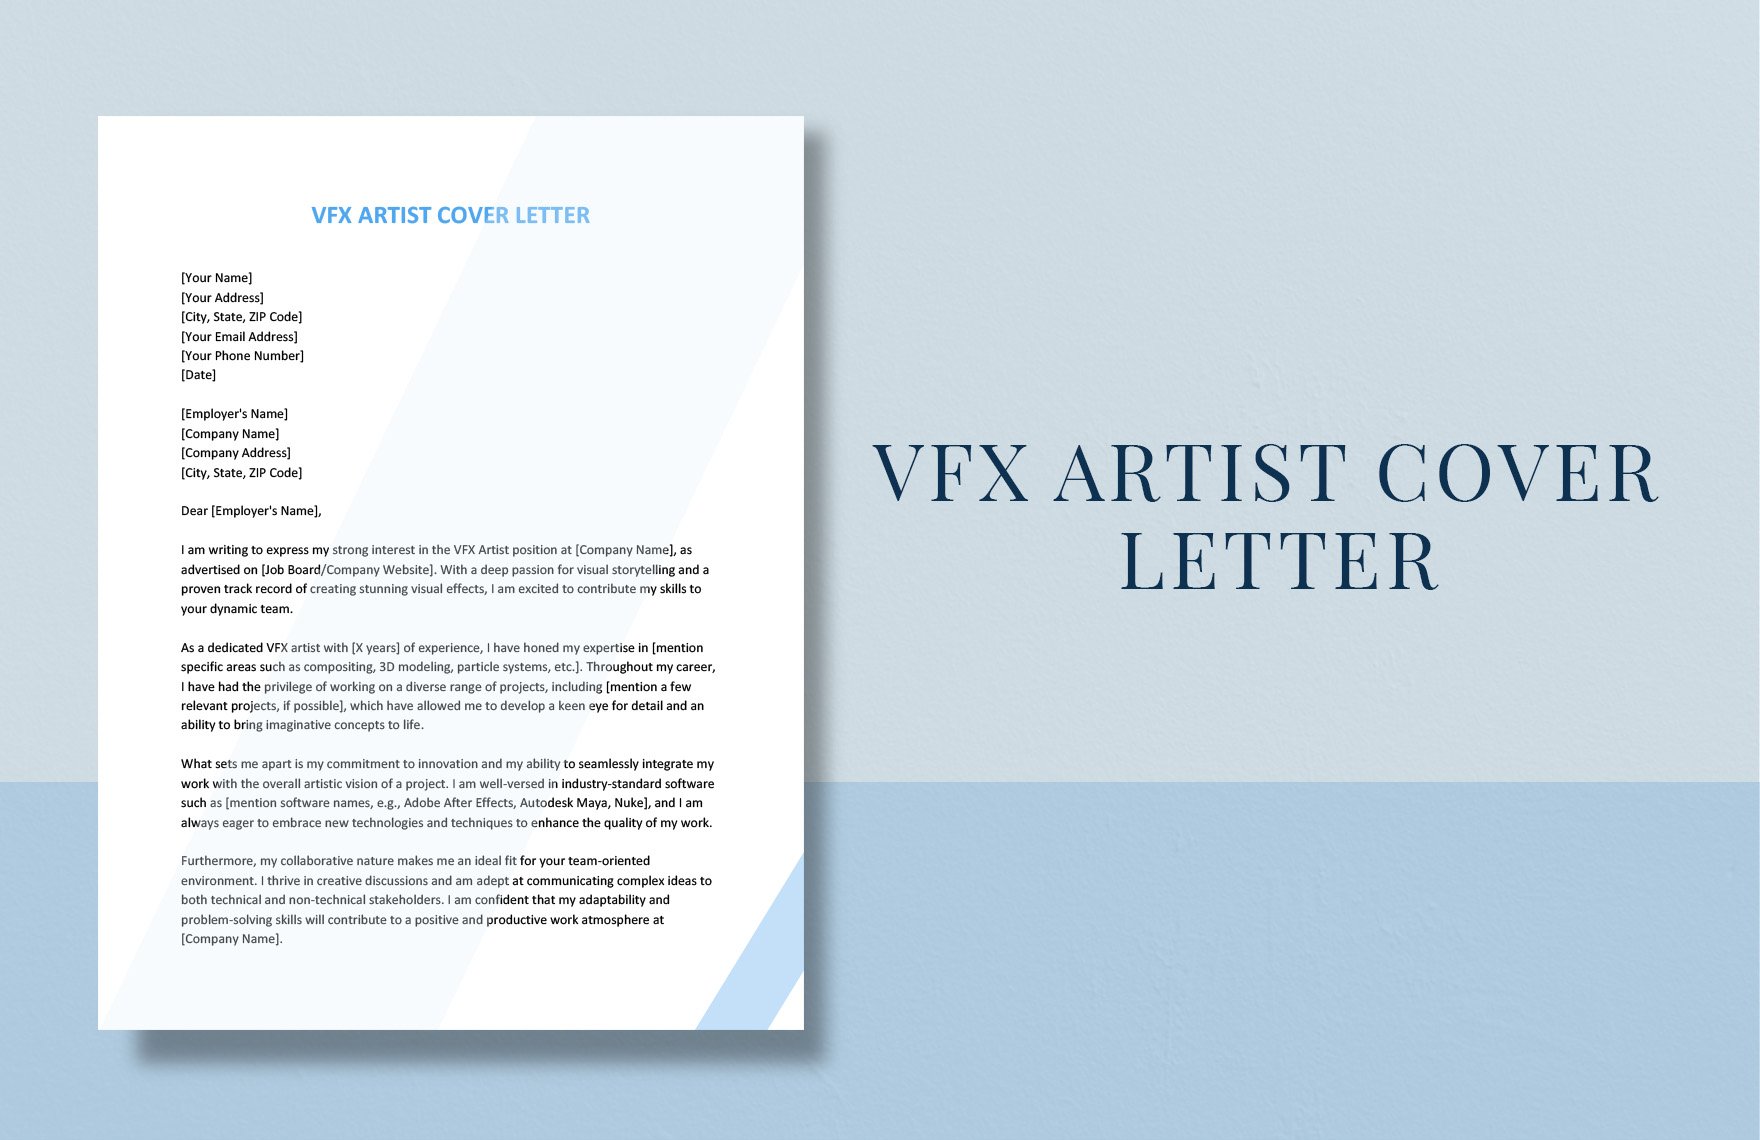 VFX Artist Cover Letter